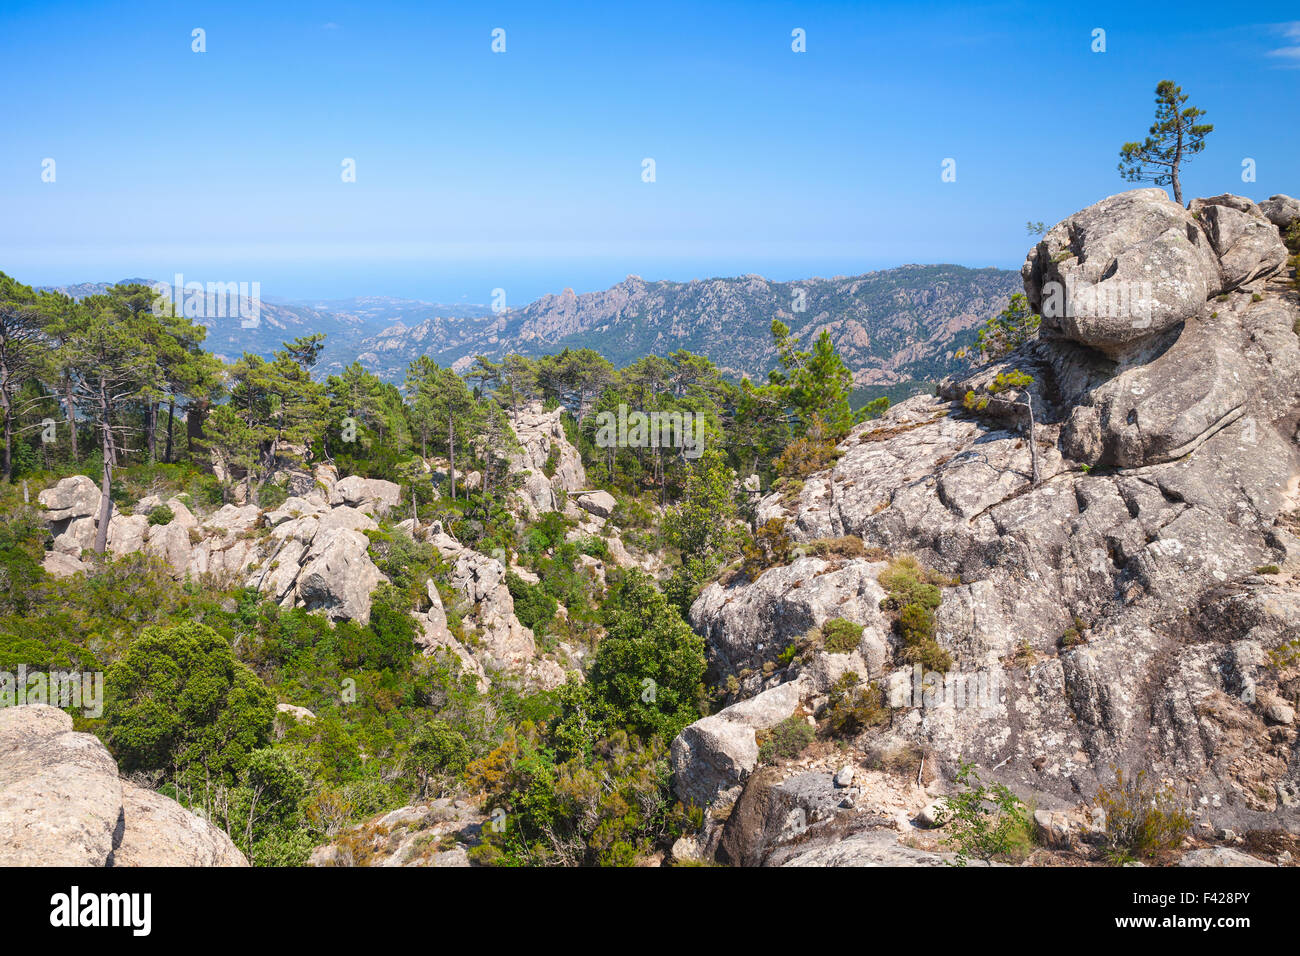 Montagne sauvage avec de petits pins qui poussent sur les roches. Au sud de la Corse, France Banque D'Images